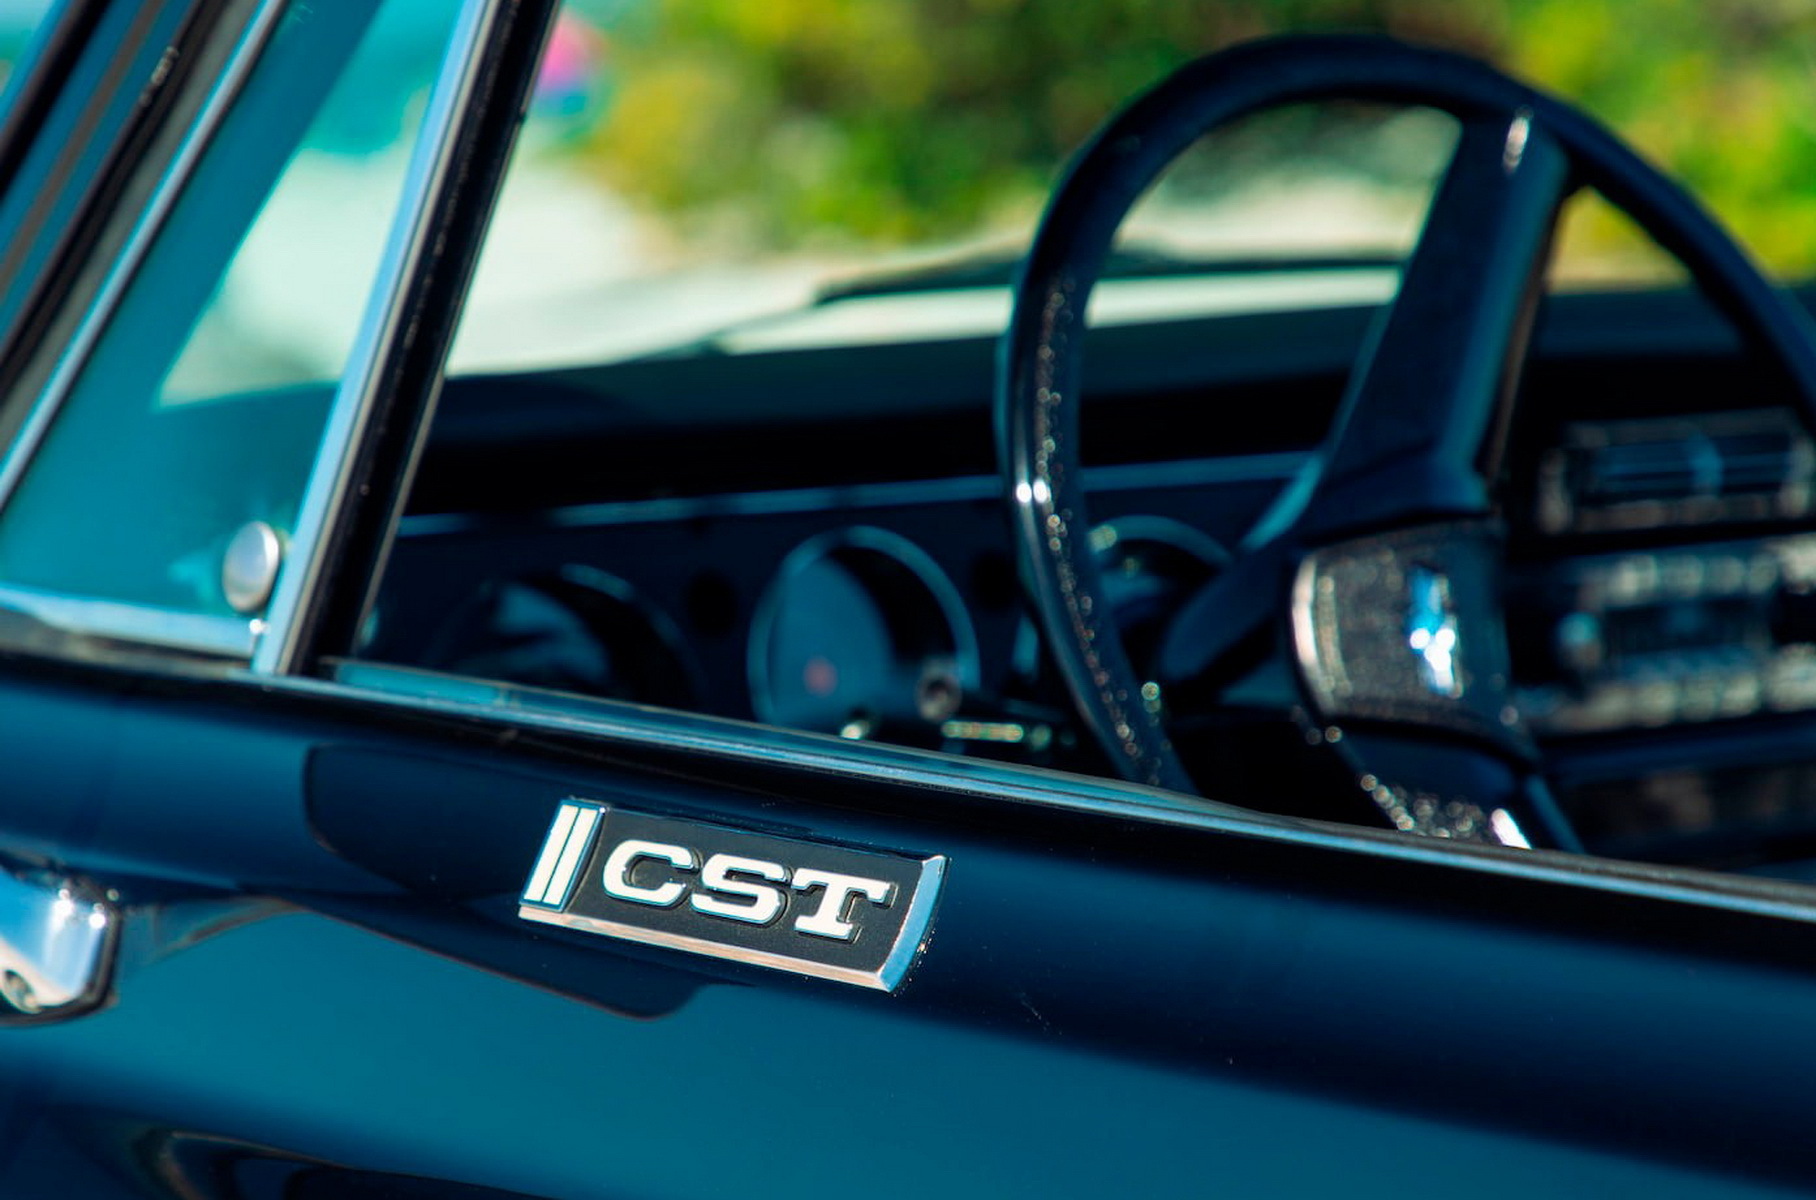 Посмотрите на идеальный 49-летний Chevrolet Blazer с мотором от Corvette